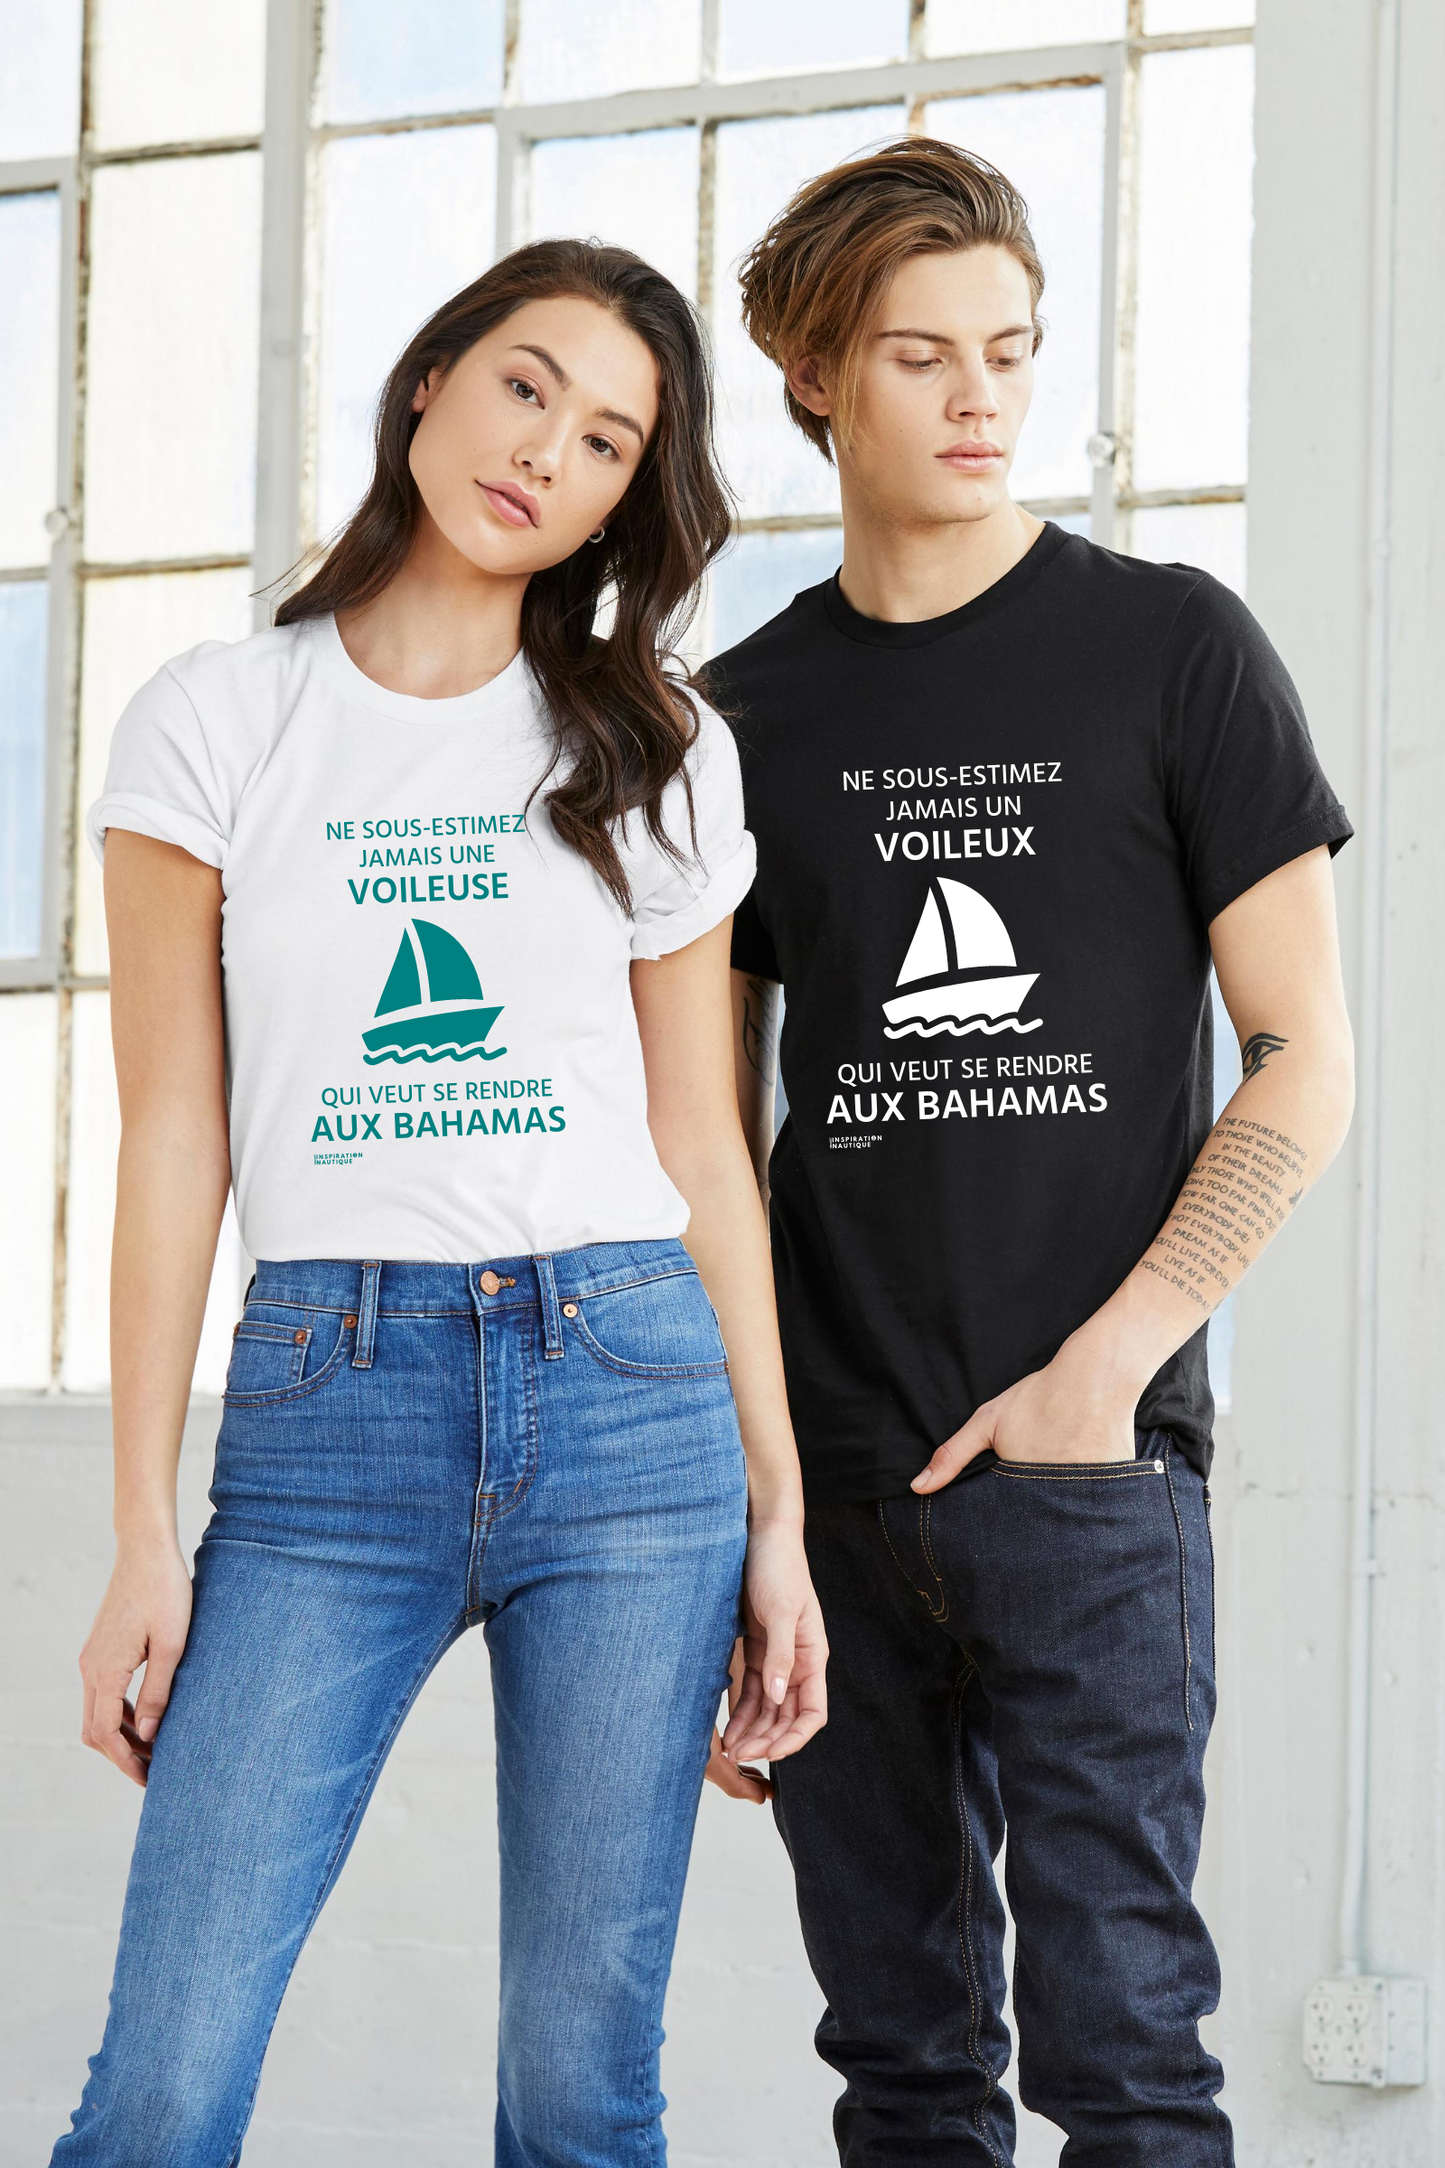 T-shirt unisexe : Ne sous-estimez jamais une voileuse qui veut se rendre aux Bahamas - Visuel sarcelle